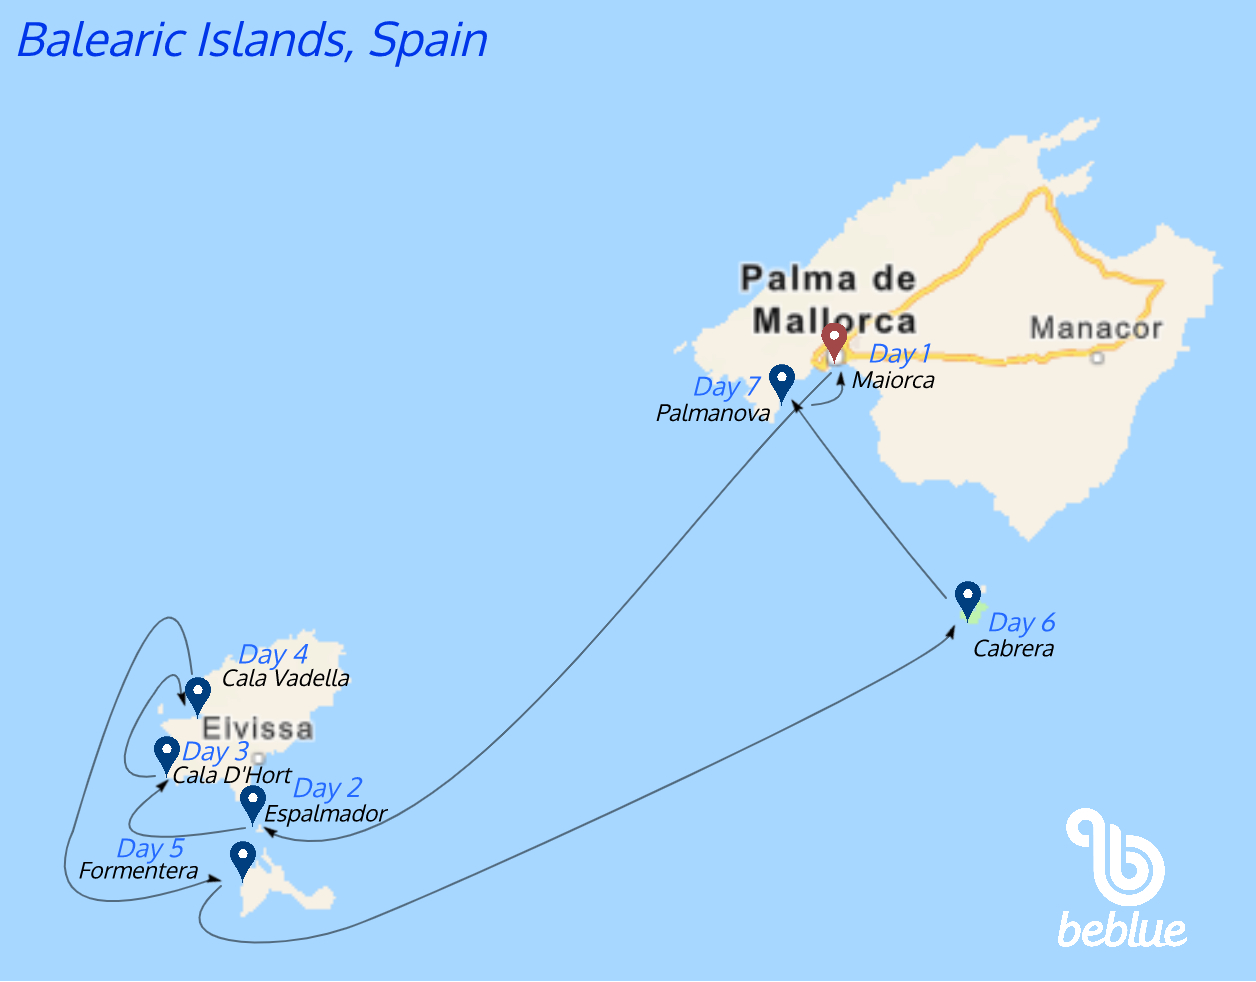 BeFree Balearic Islands - ID 493